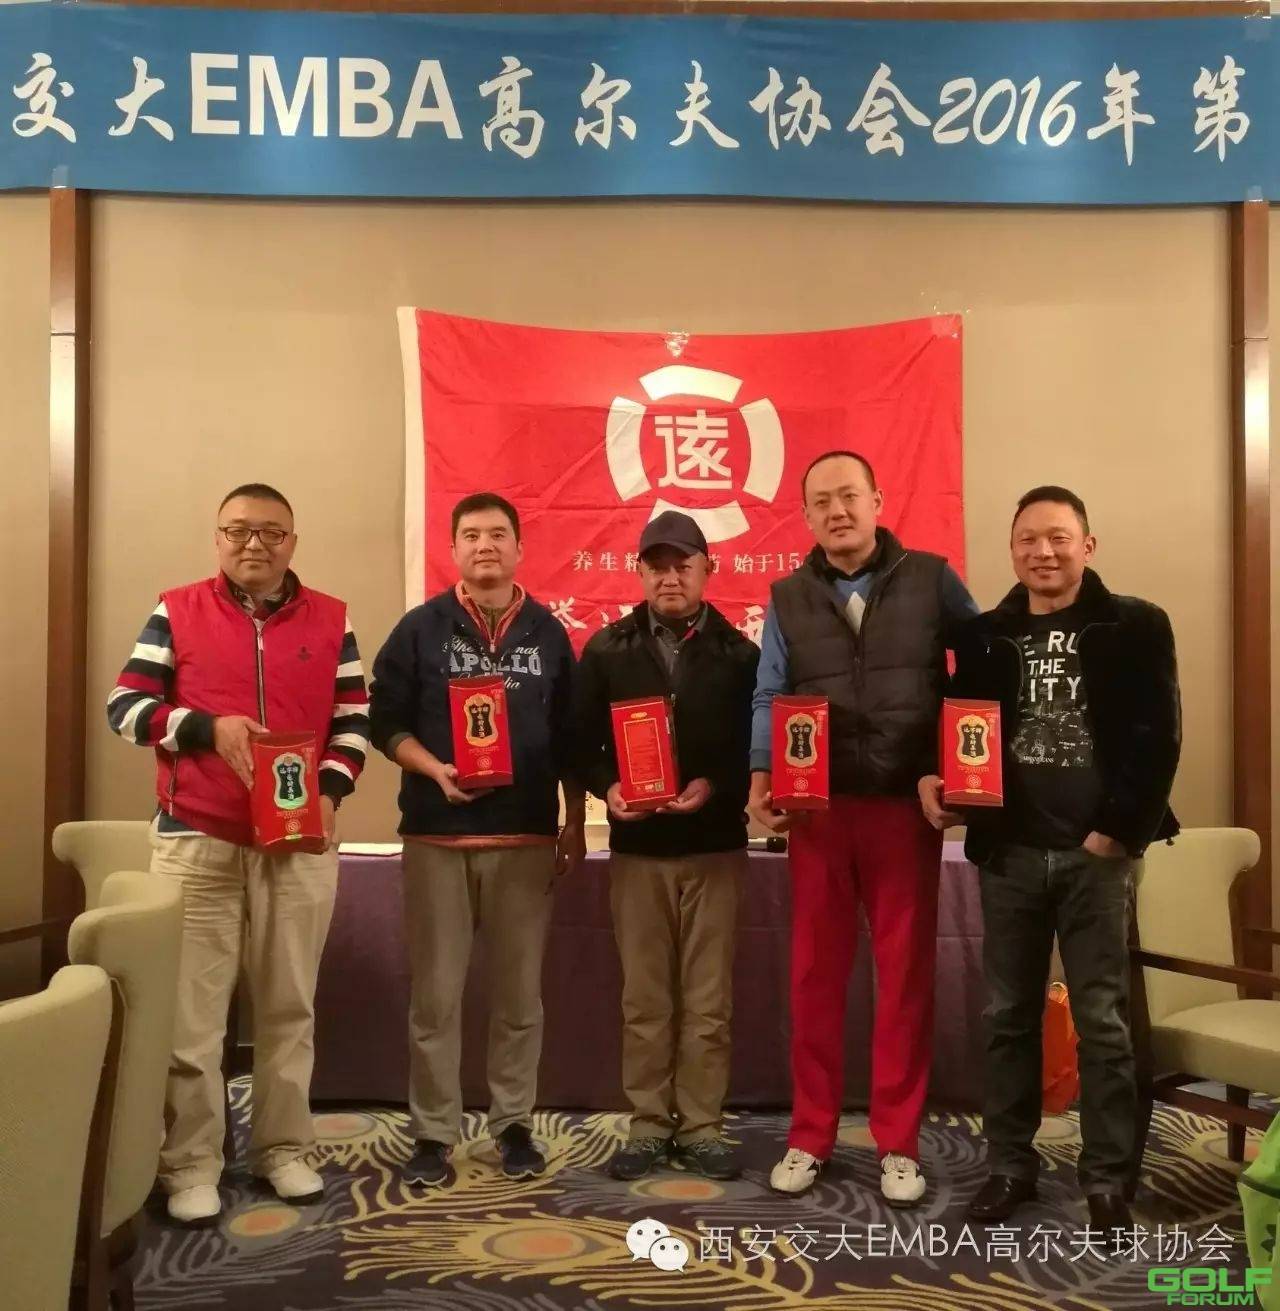 西安交通大学EMBA高尔夫协会第七届月例赛圆满结束